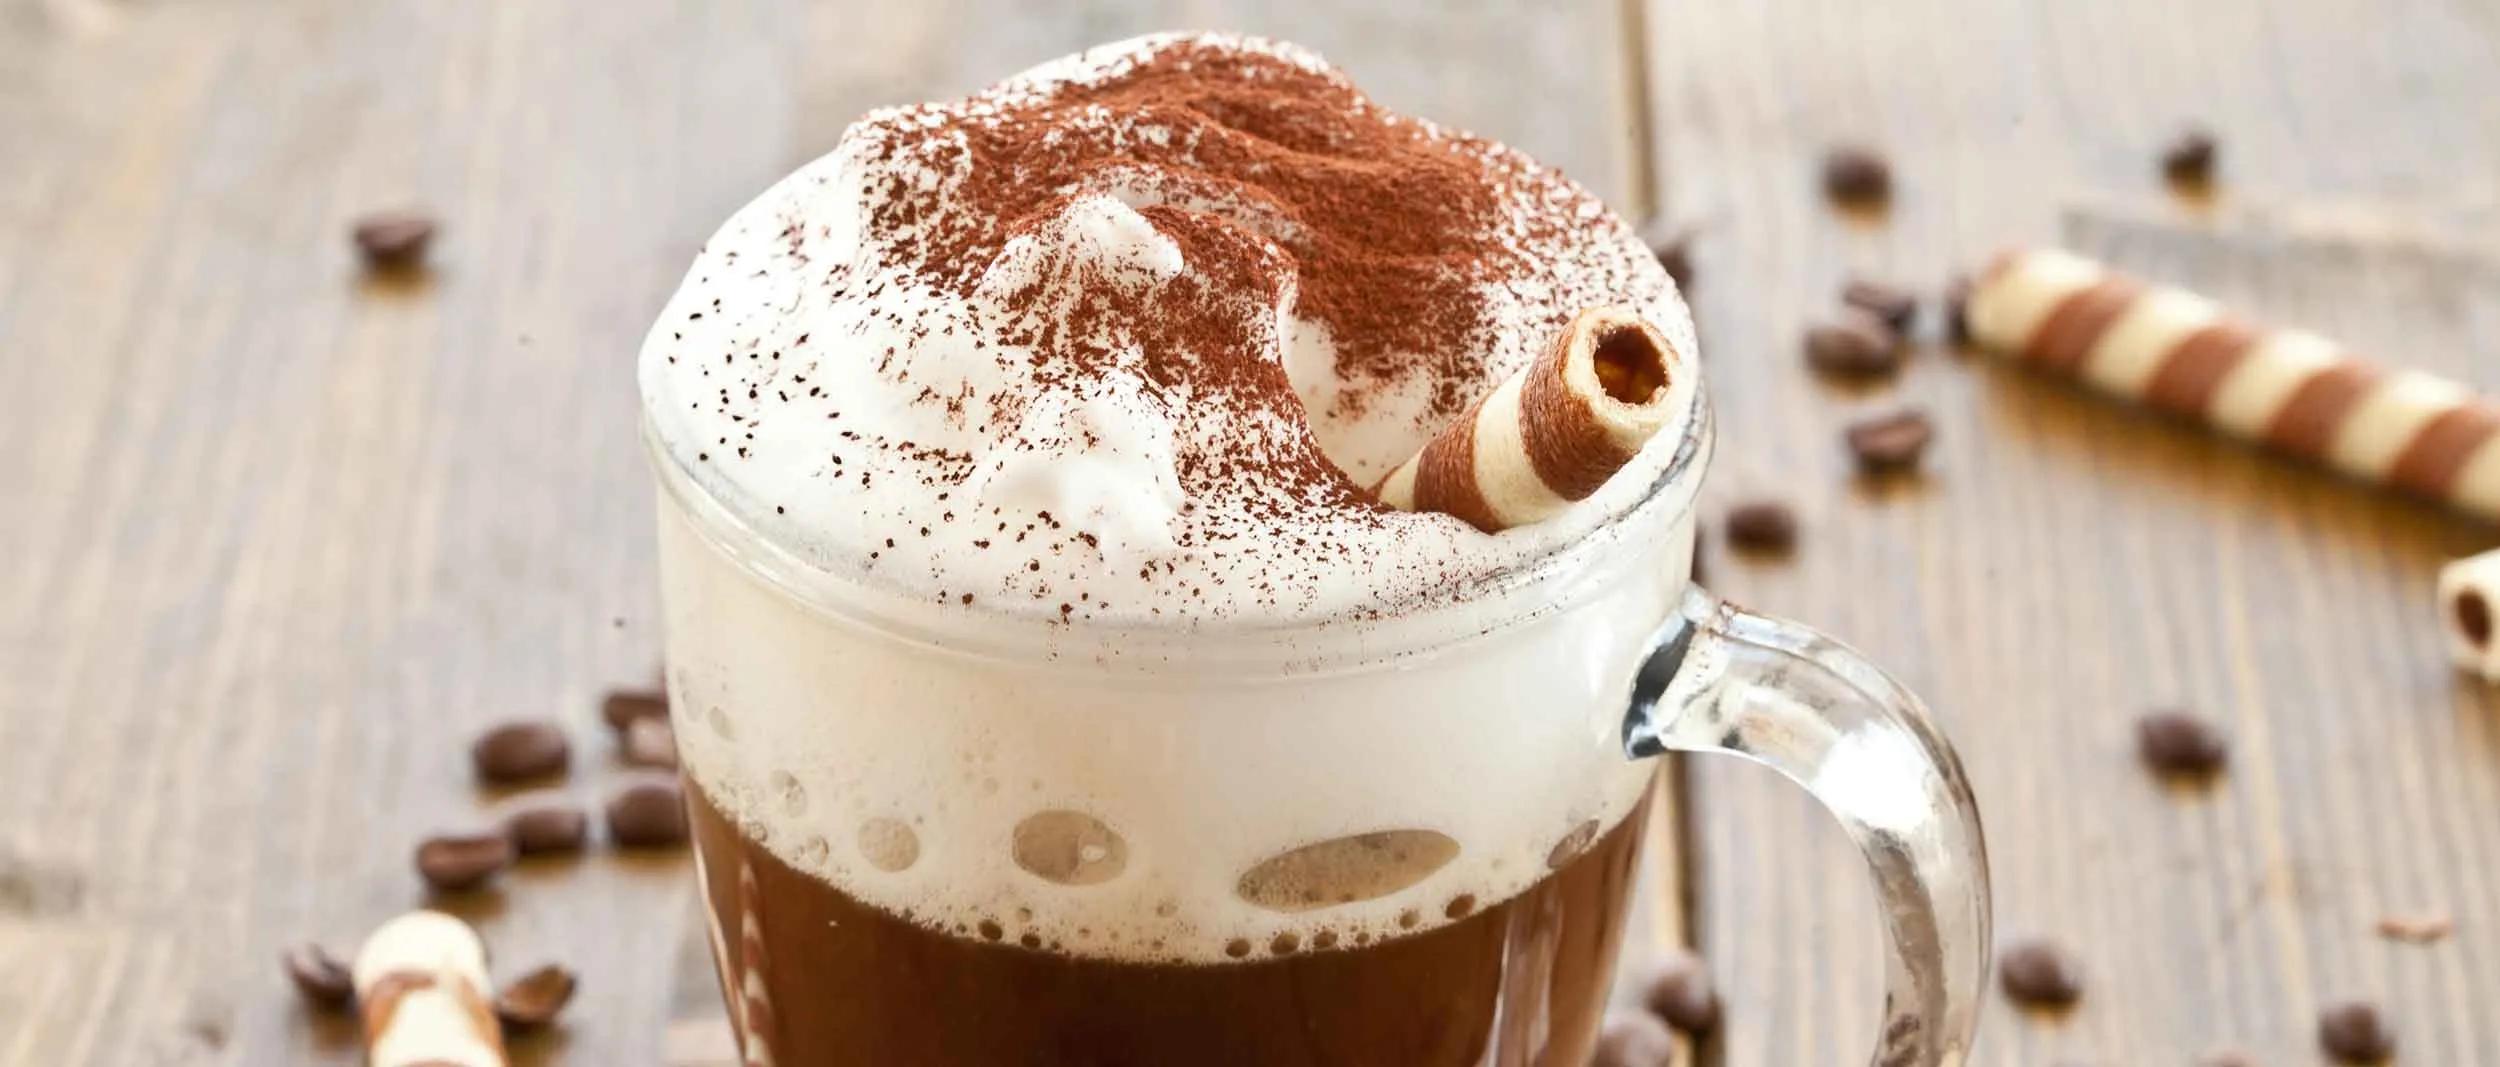 Das wussten Sie noch nicht über Kakao | Coffeefair